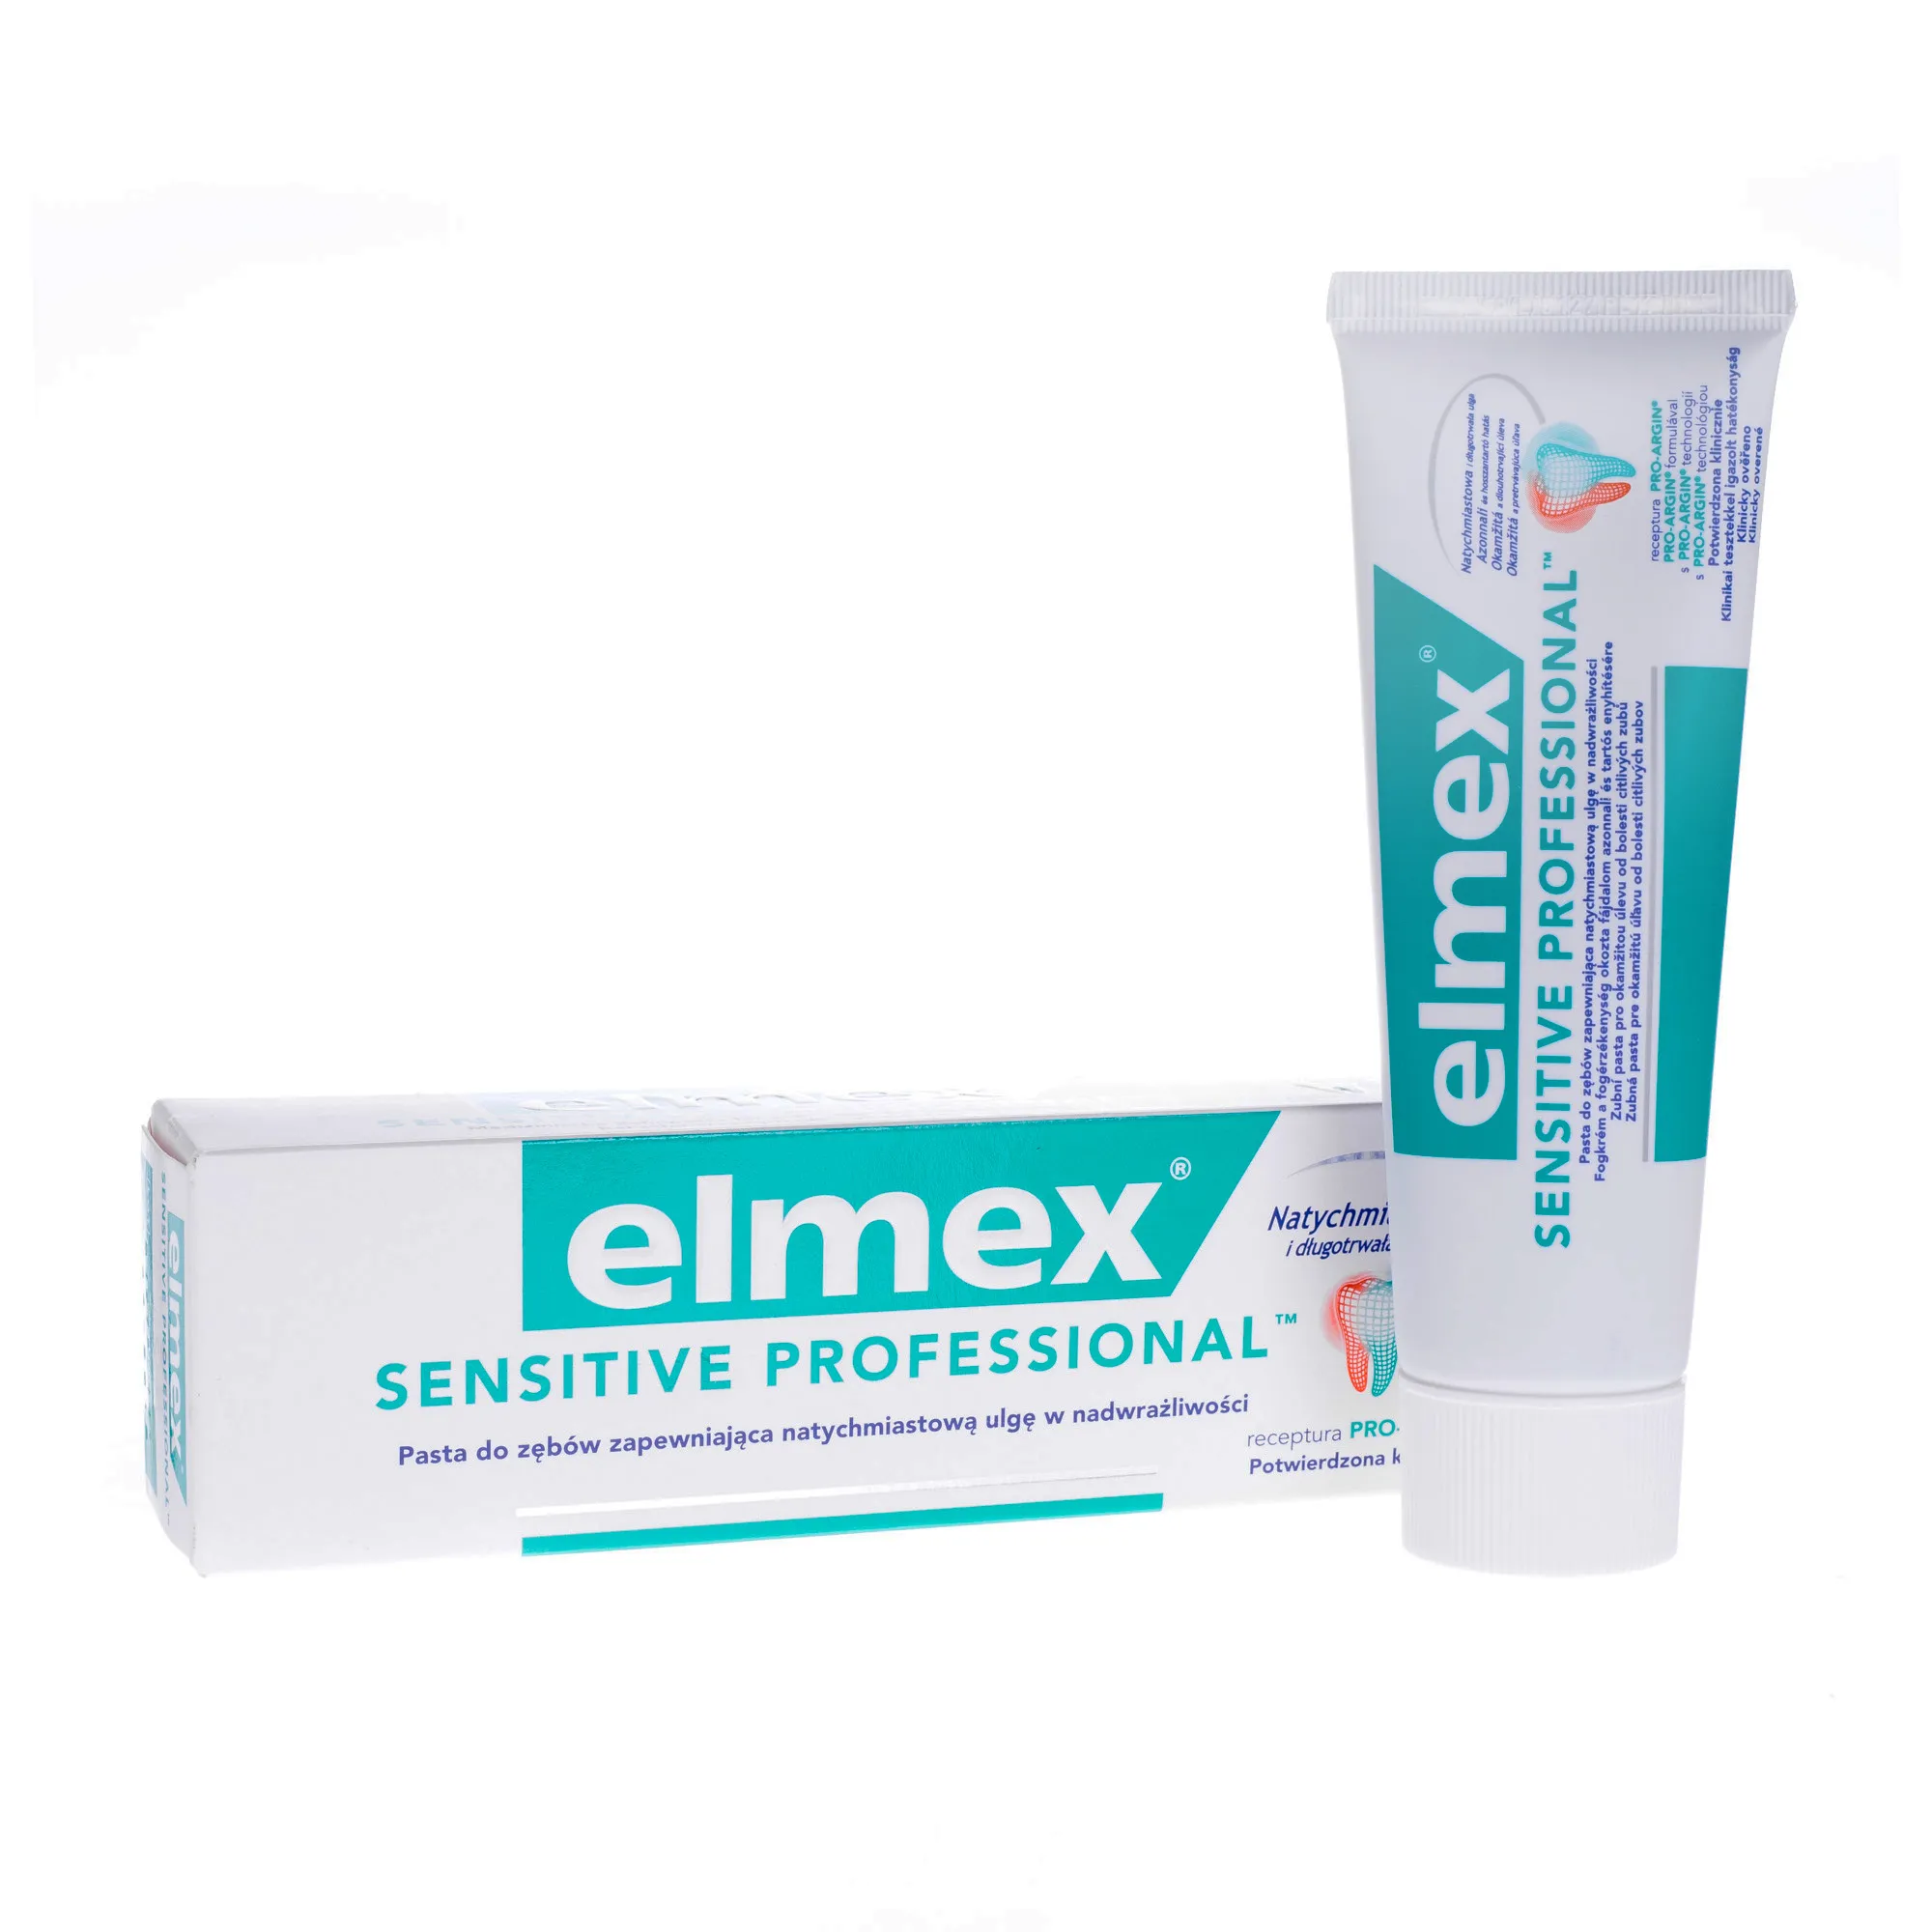 Elmex Sensitive Professional, ulga w nadwrażliwości, 75 ml